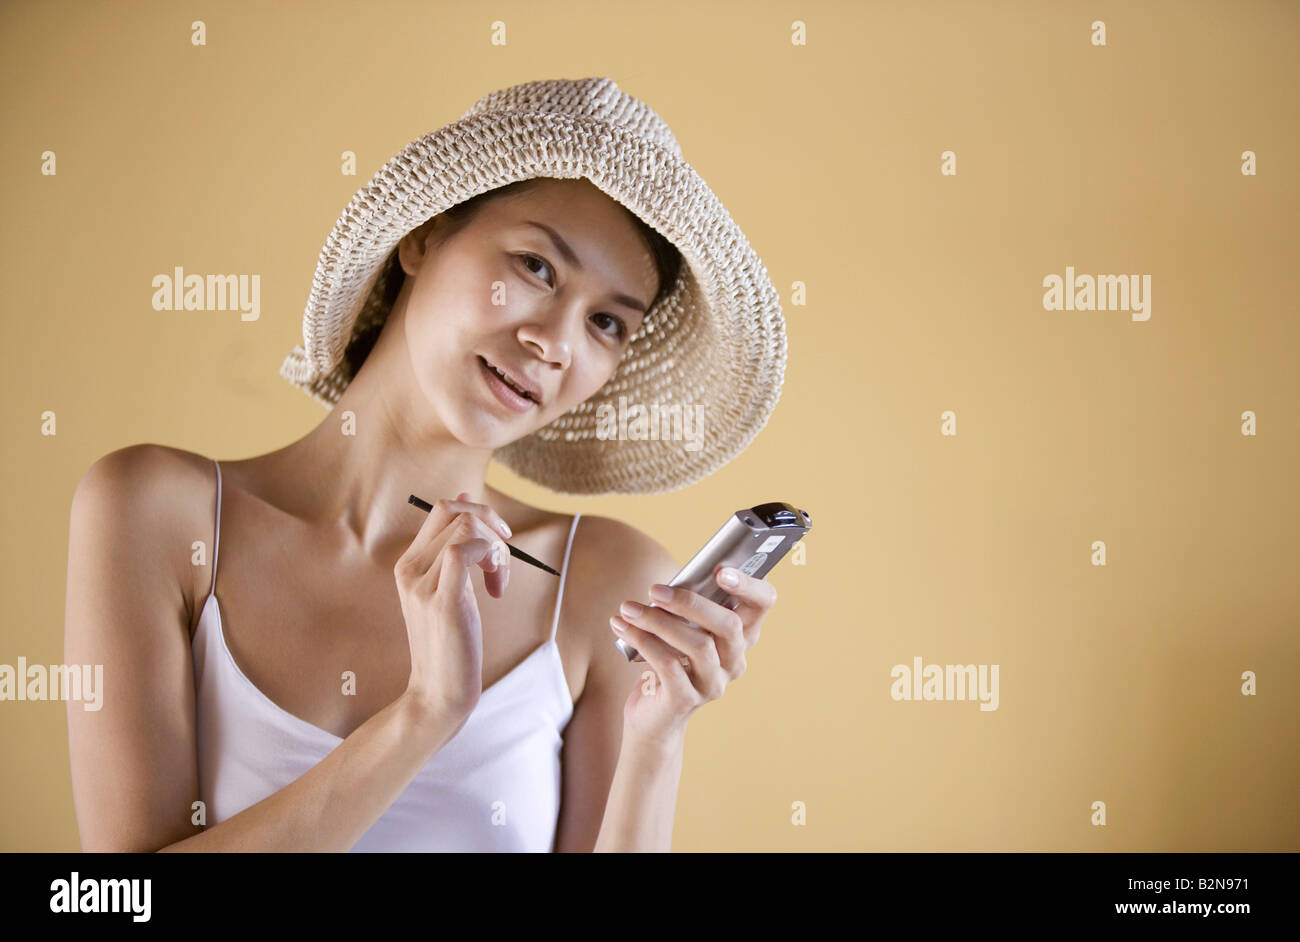 Porträt einer jungen Frau mit einem personenbezogenen Daten-Assistenten Stockfoto